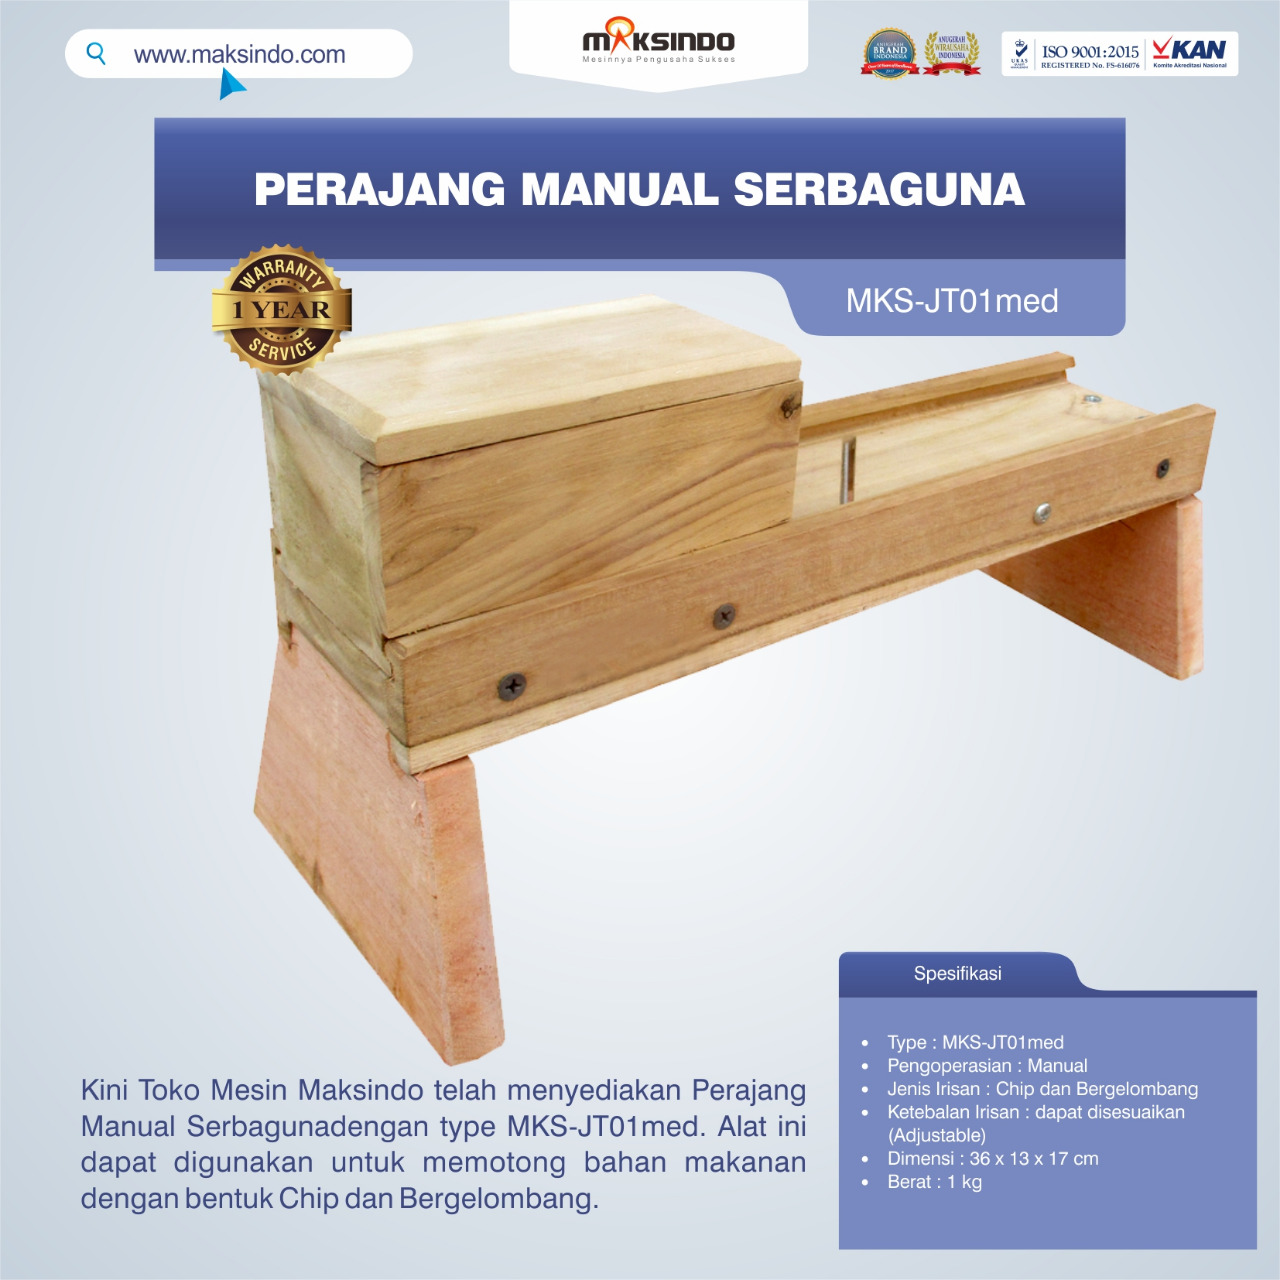 Jual Perajang Manual Serbaguna MKS-JT01med di Jakarta